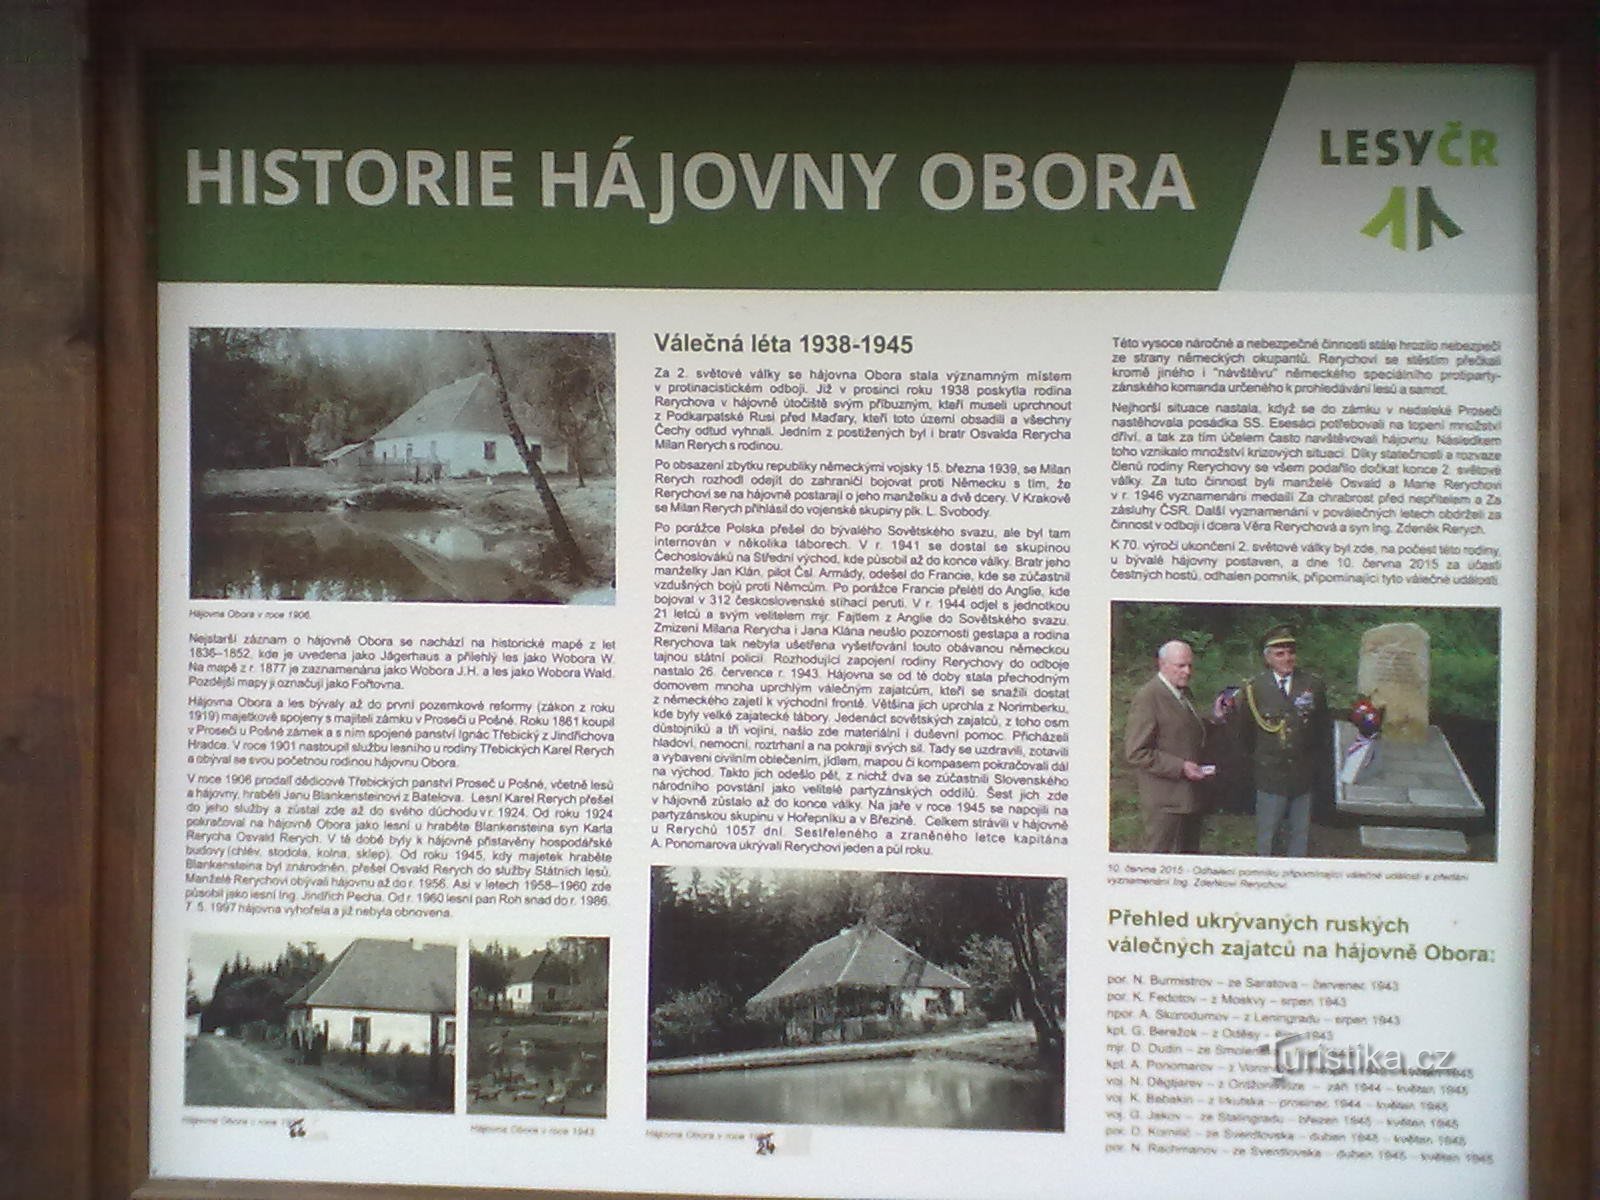 2. Bivše skrovište Rerychov - tijekom rata obitelj je skrivala odbjegle zatvorenike iz koncentracijskih logora.